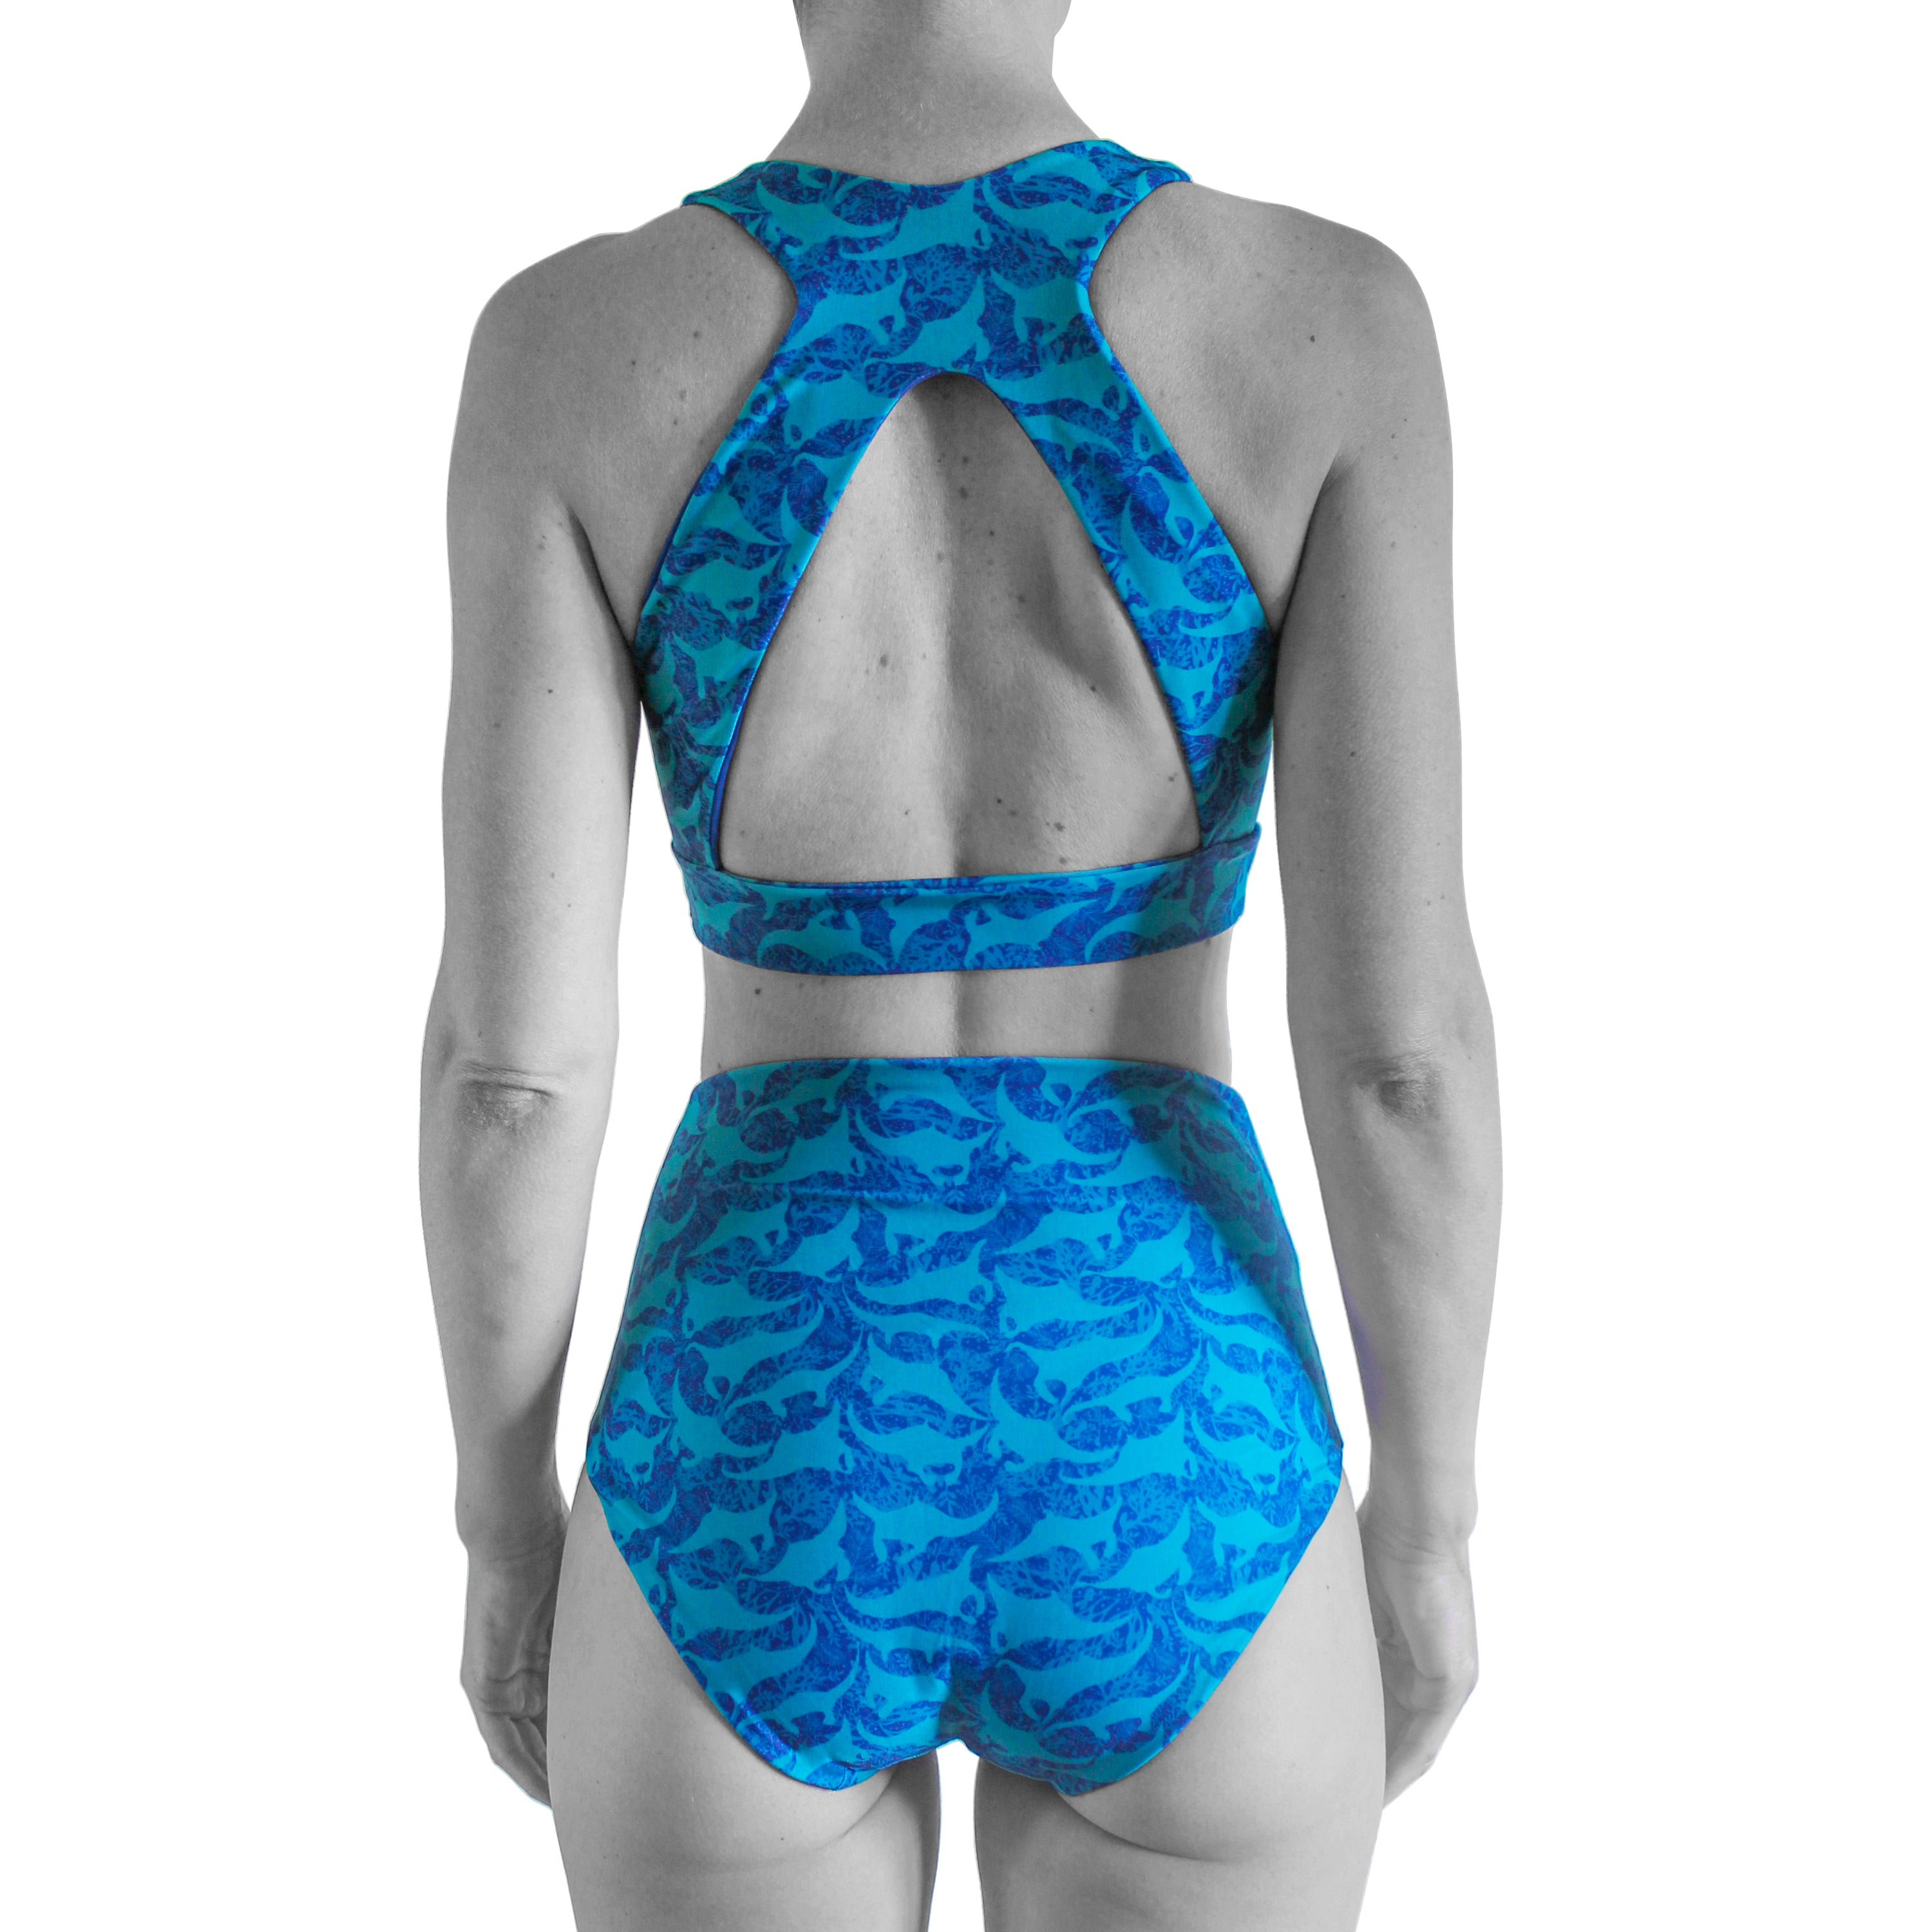 Manta Ray Print Sustainable Bikini Top